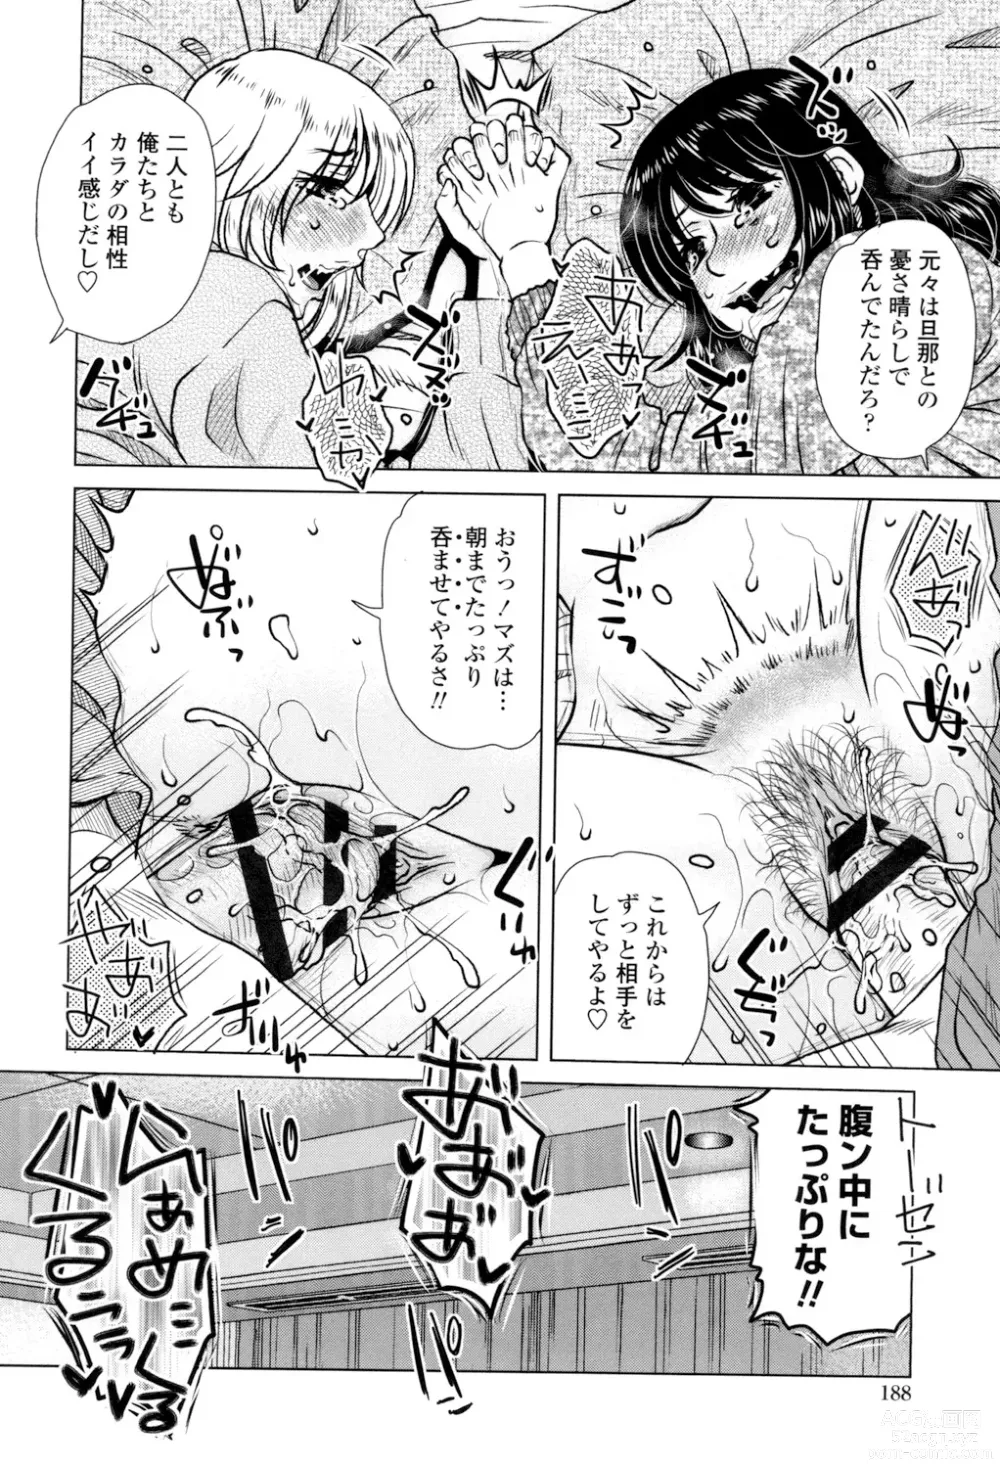 Page 190 of manga Gesu Sex?